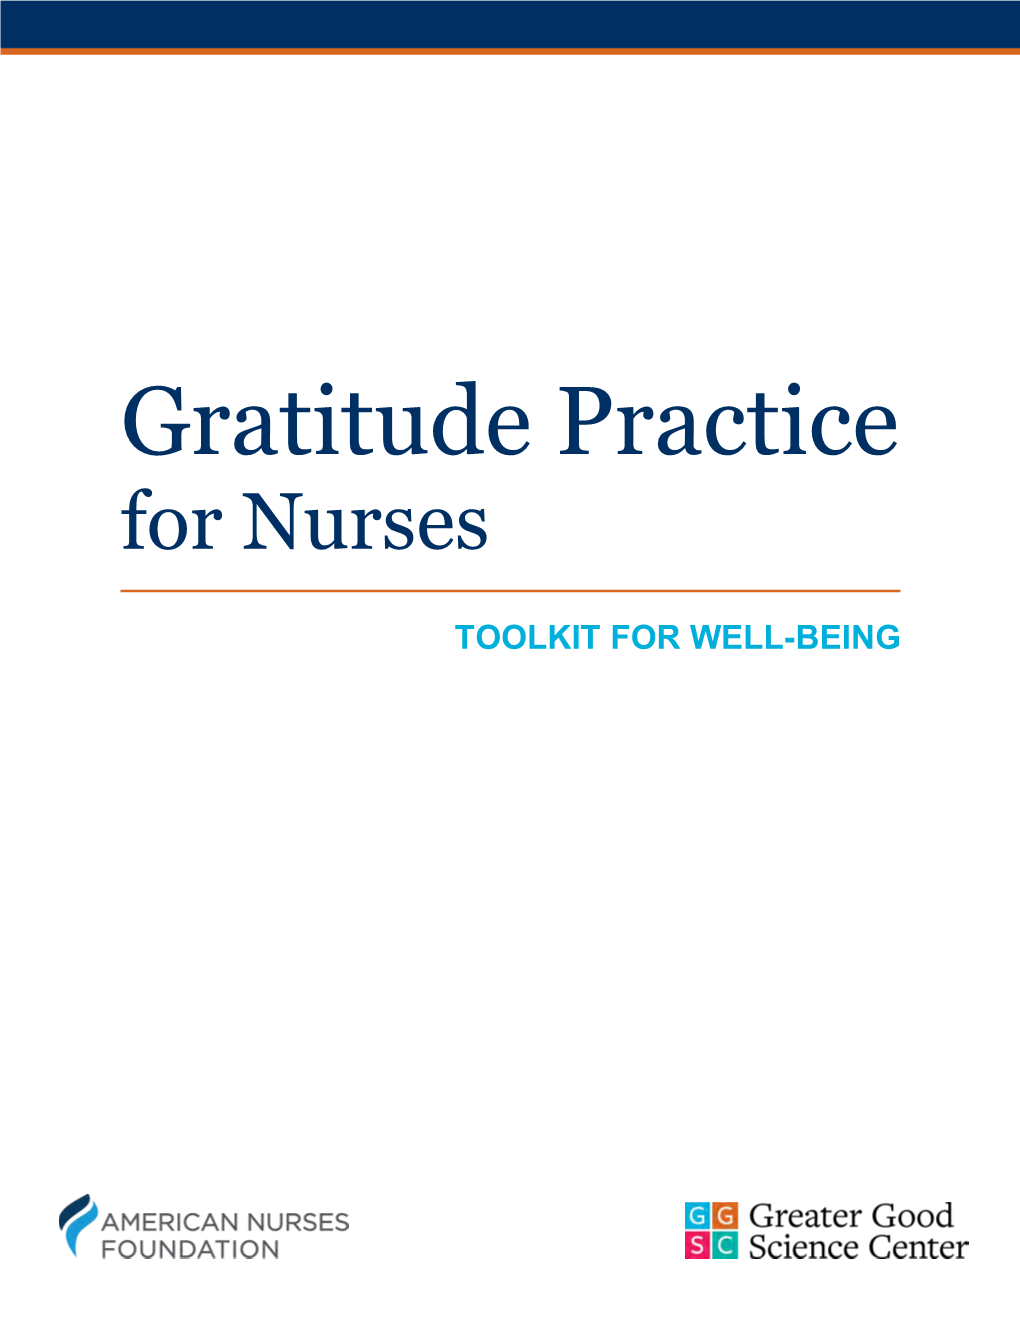 Gratitude Practice for Nurses